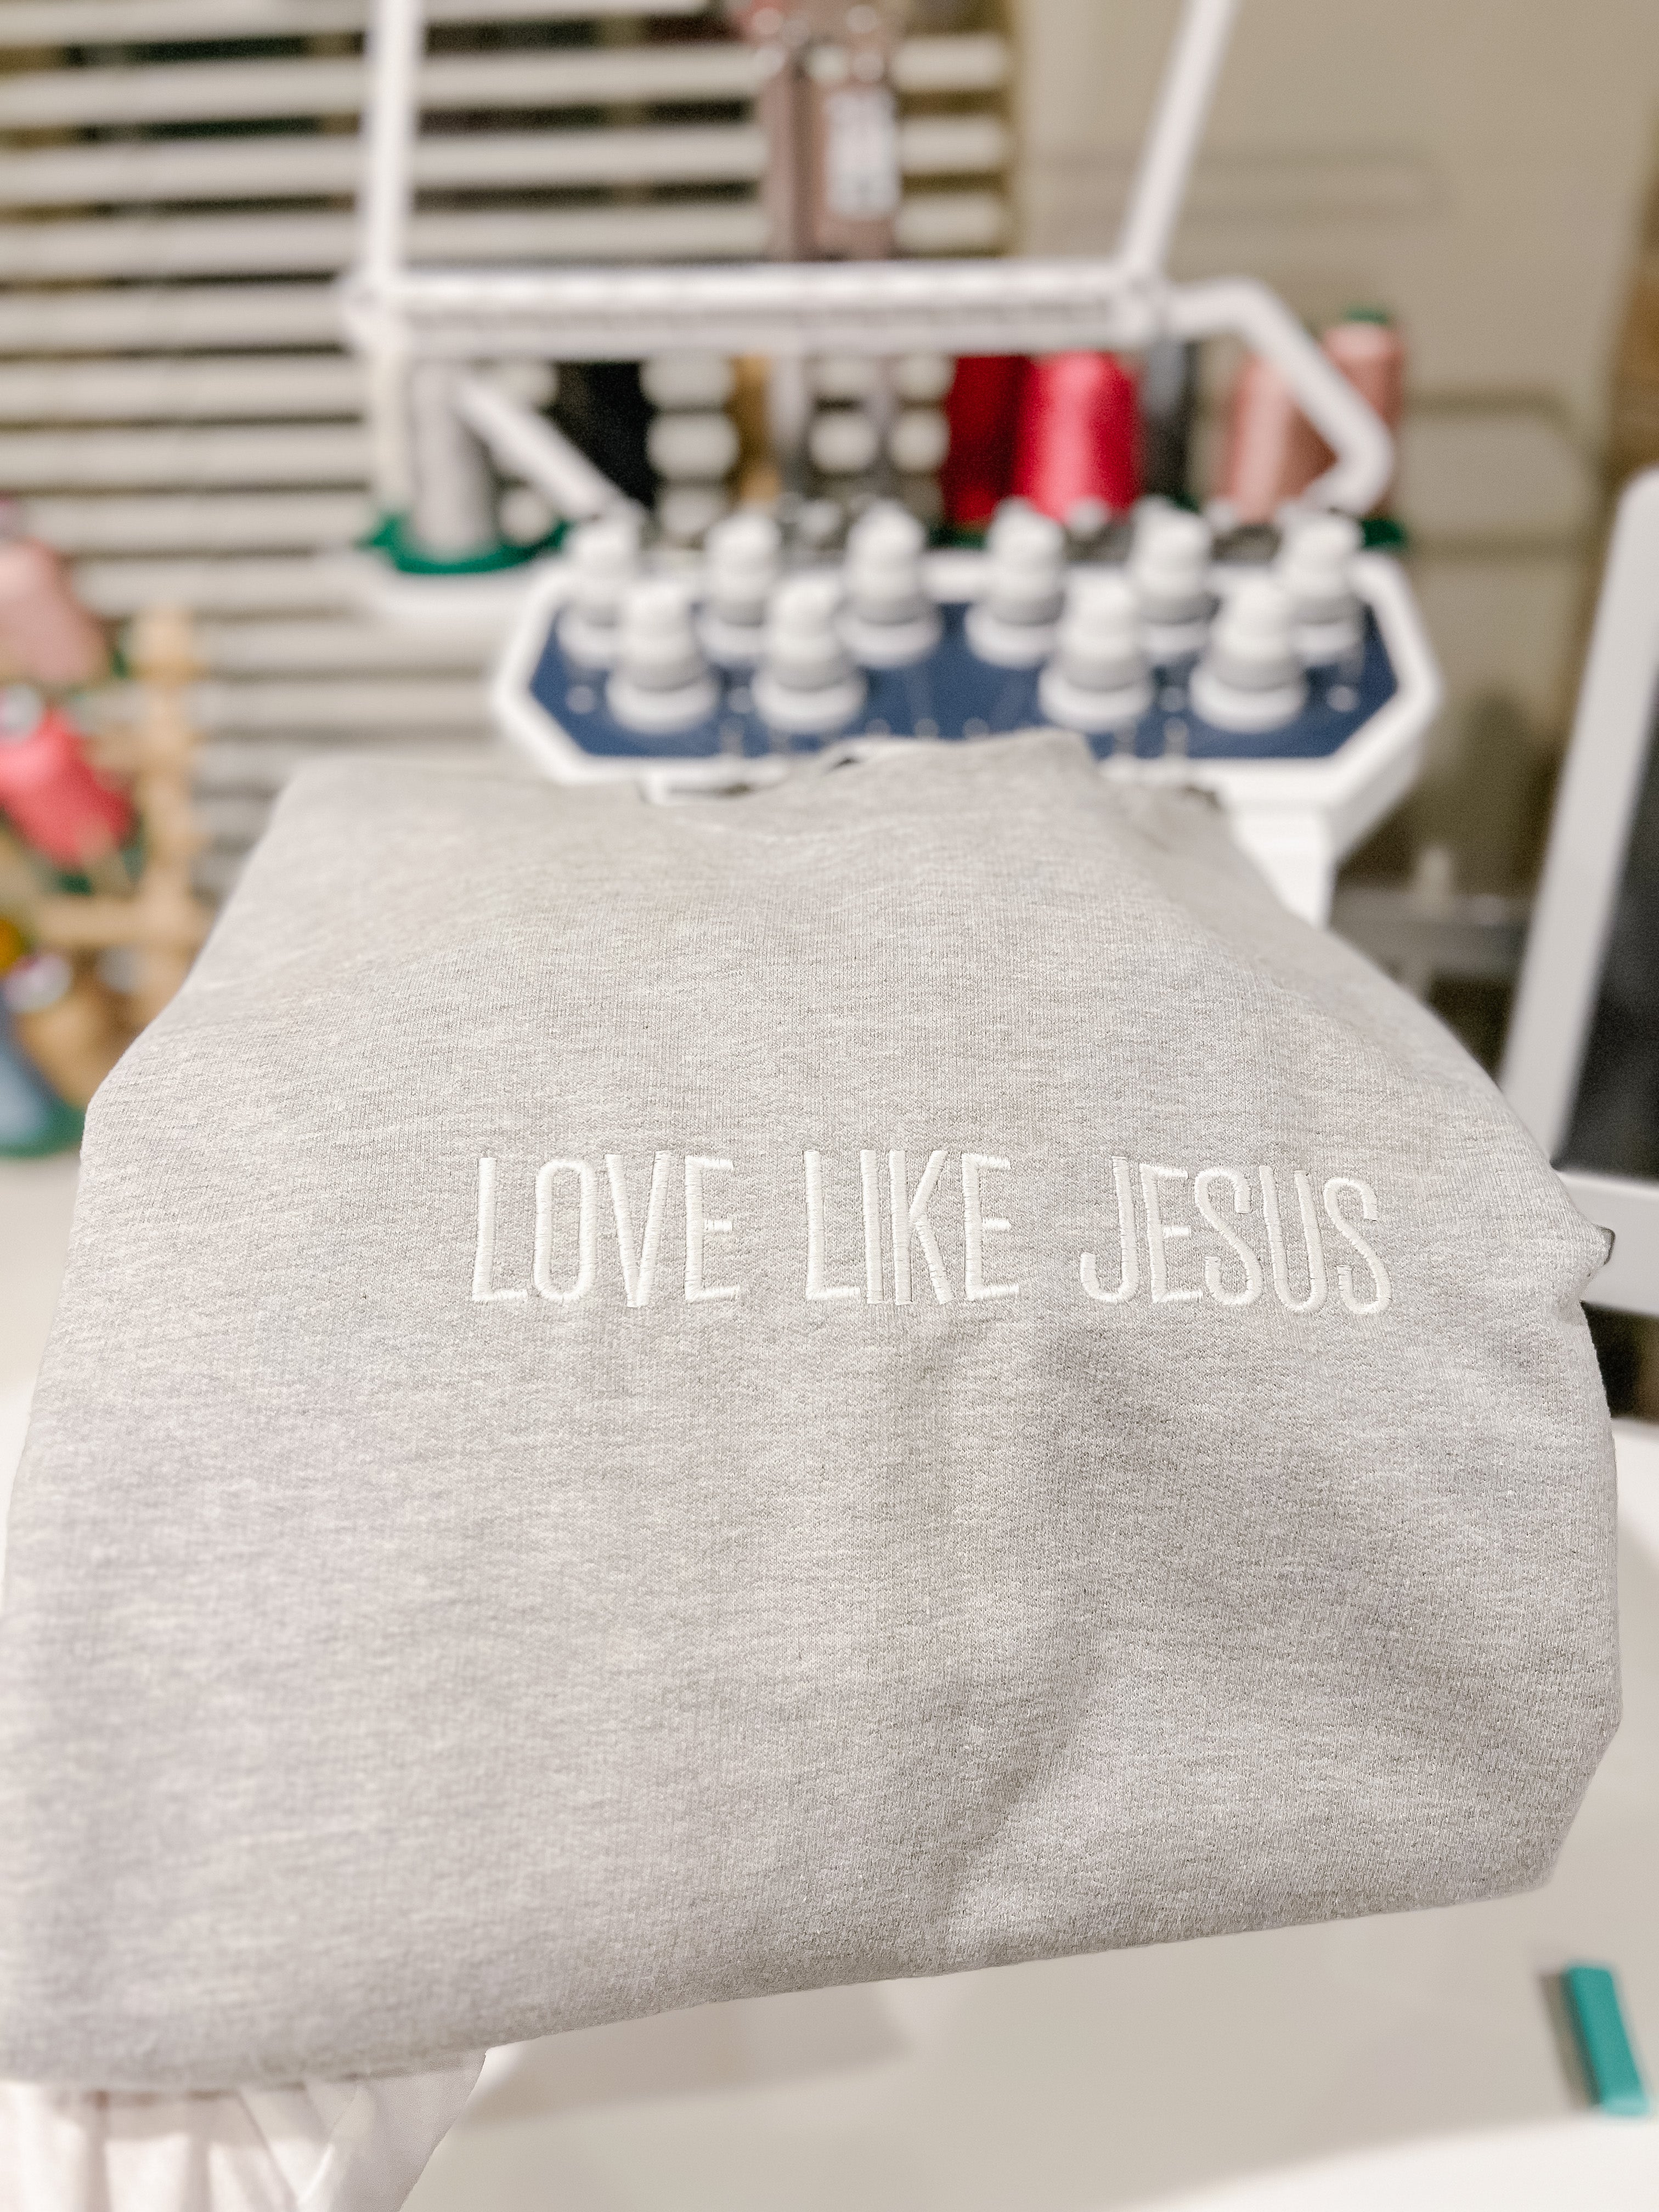 Limited Edition Custom Embroidered LOVE LIKE JESUS Hoodies